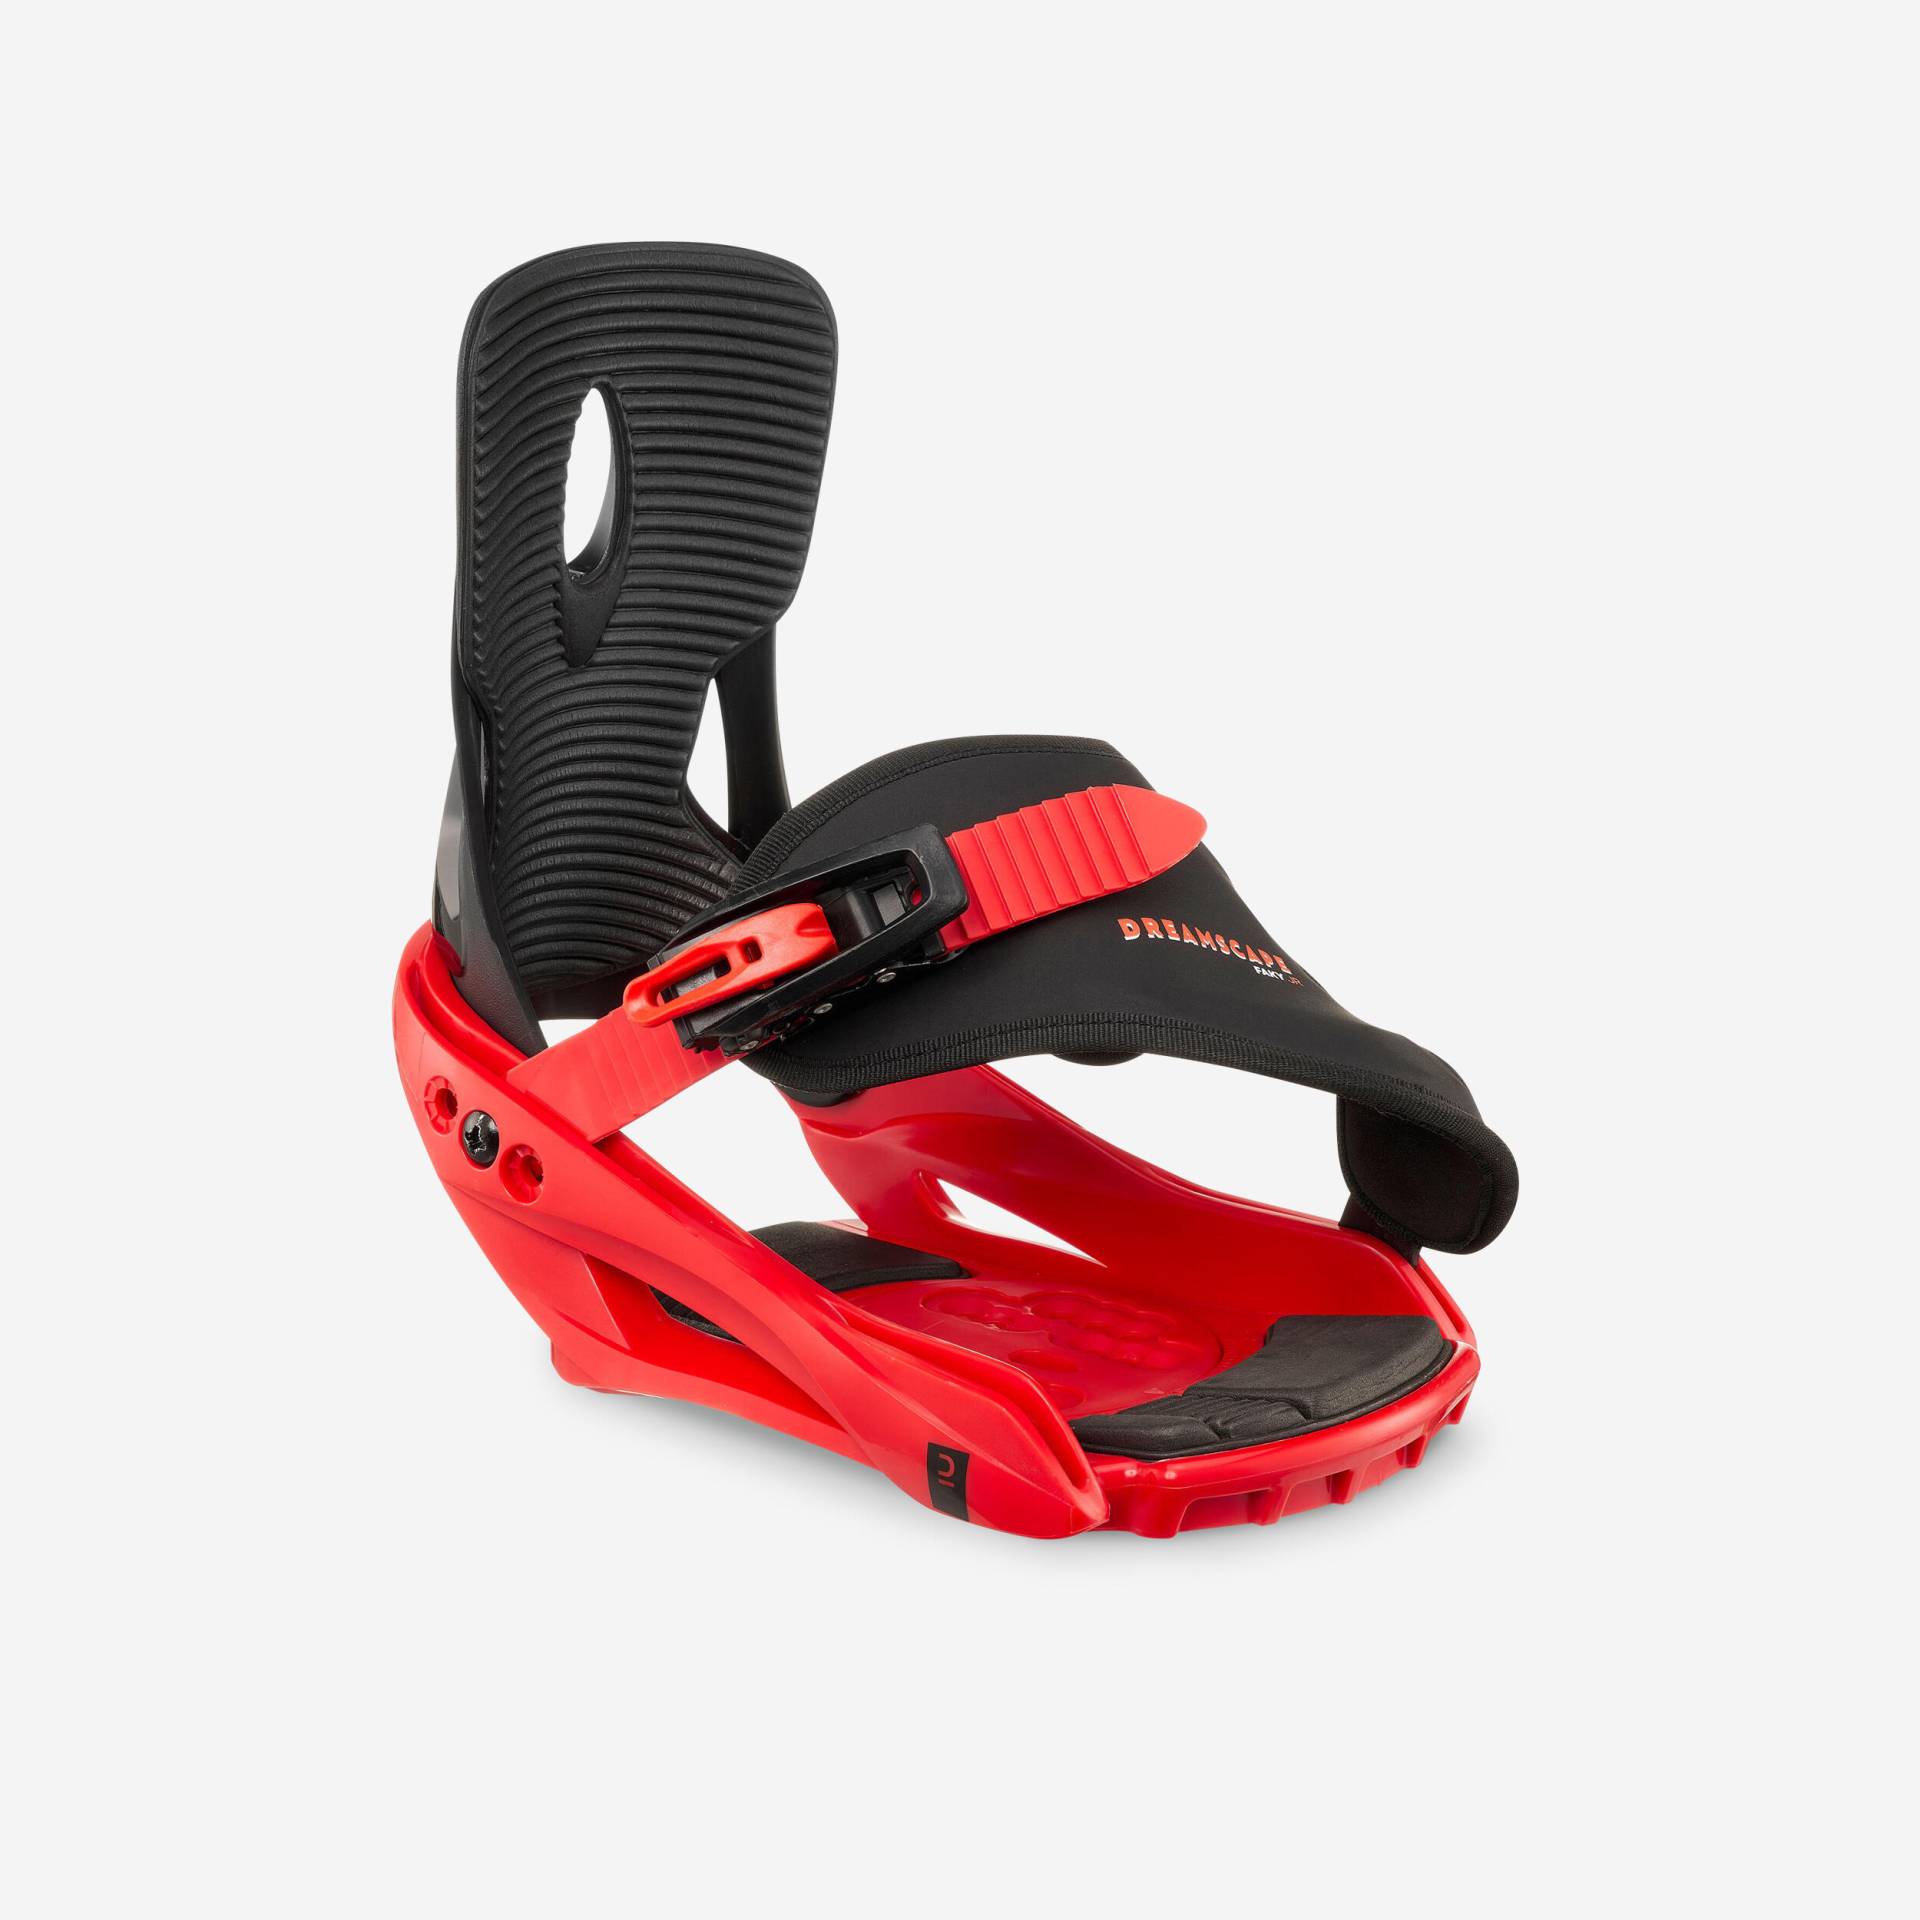 Snowboardbindung Kinder Schnellverschluss - Faky S schwarz/rot von DREAMSCAPE